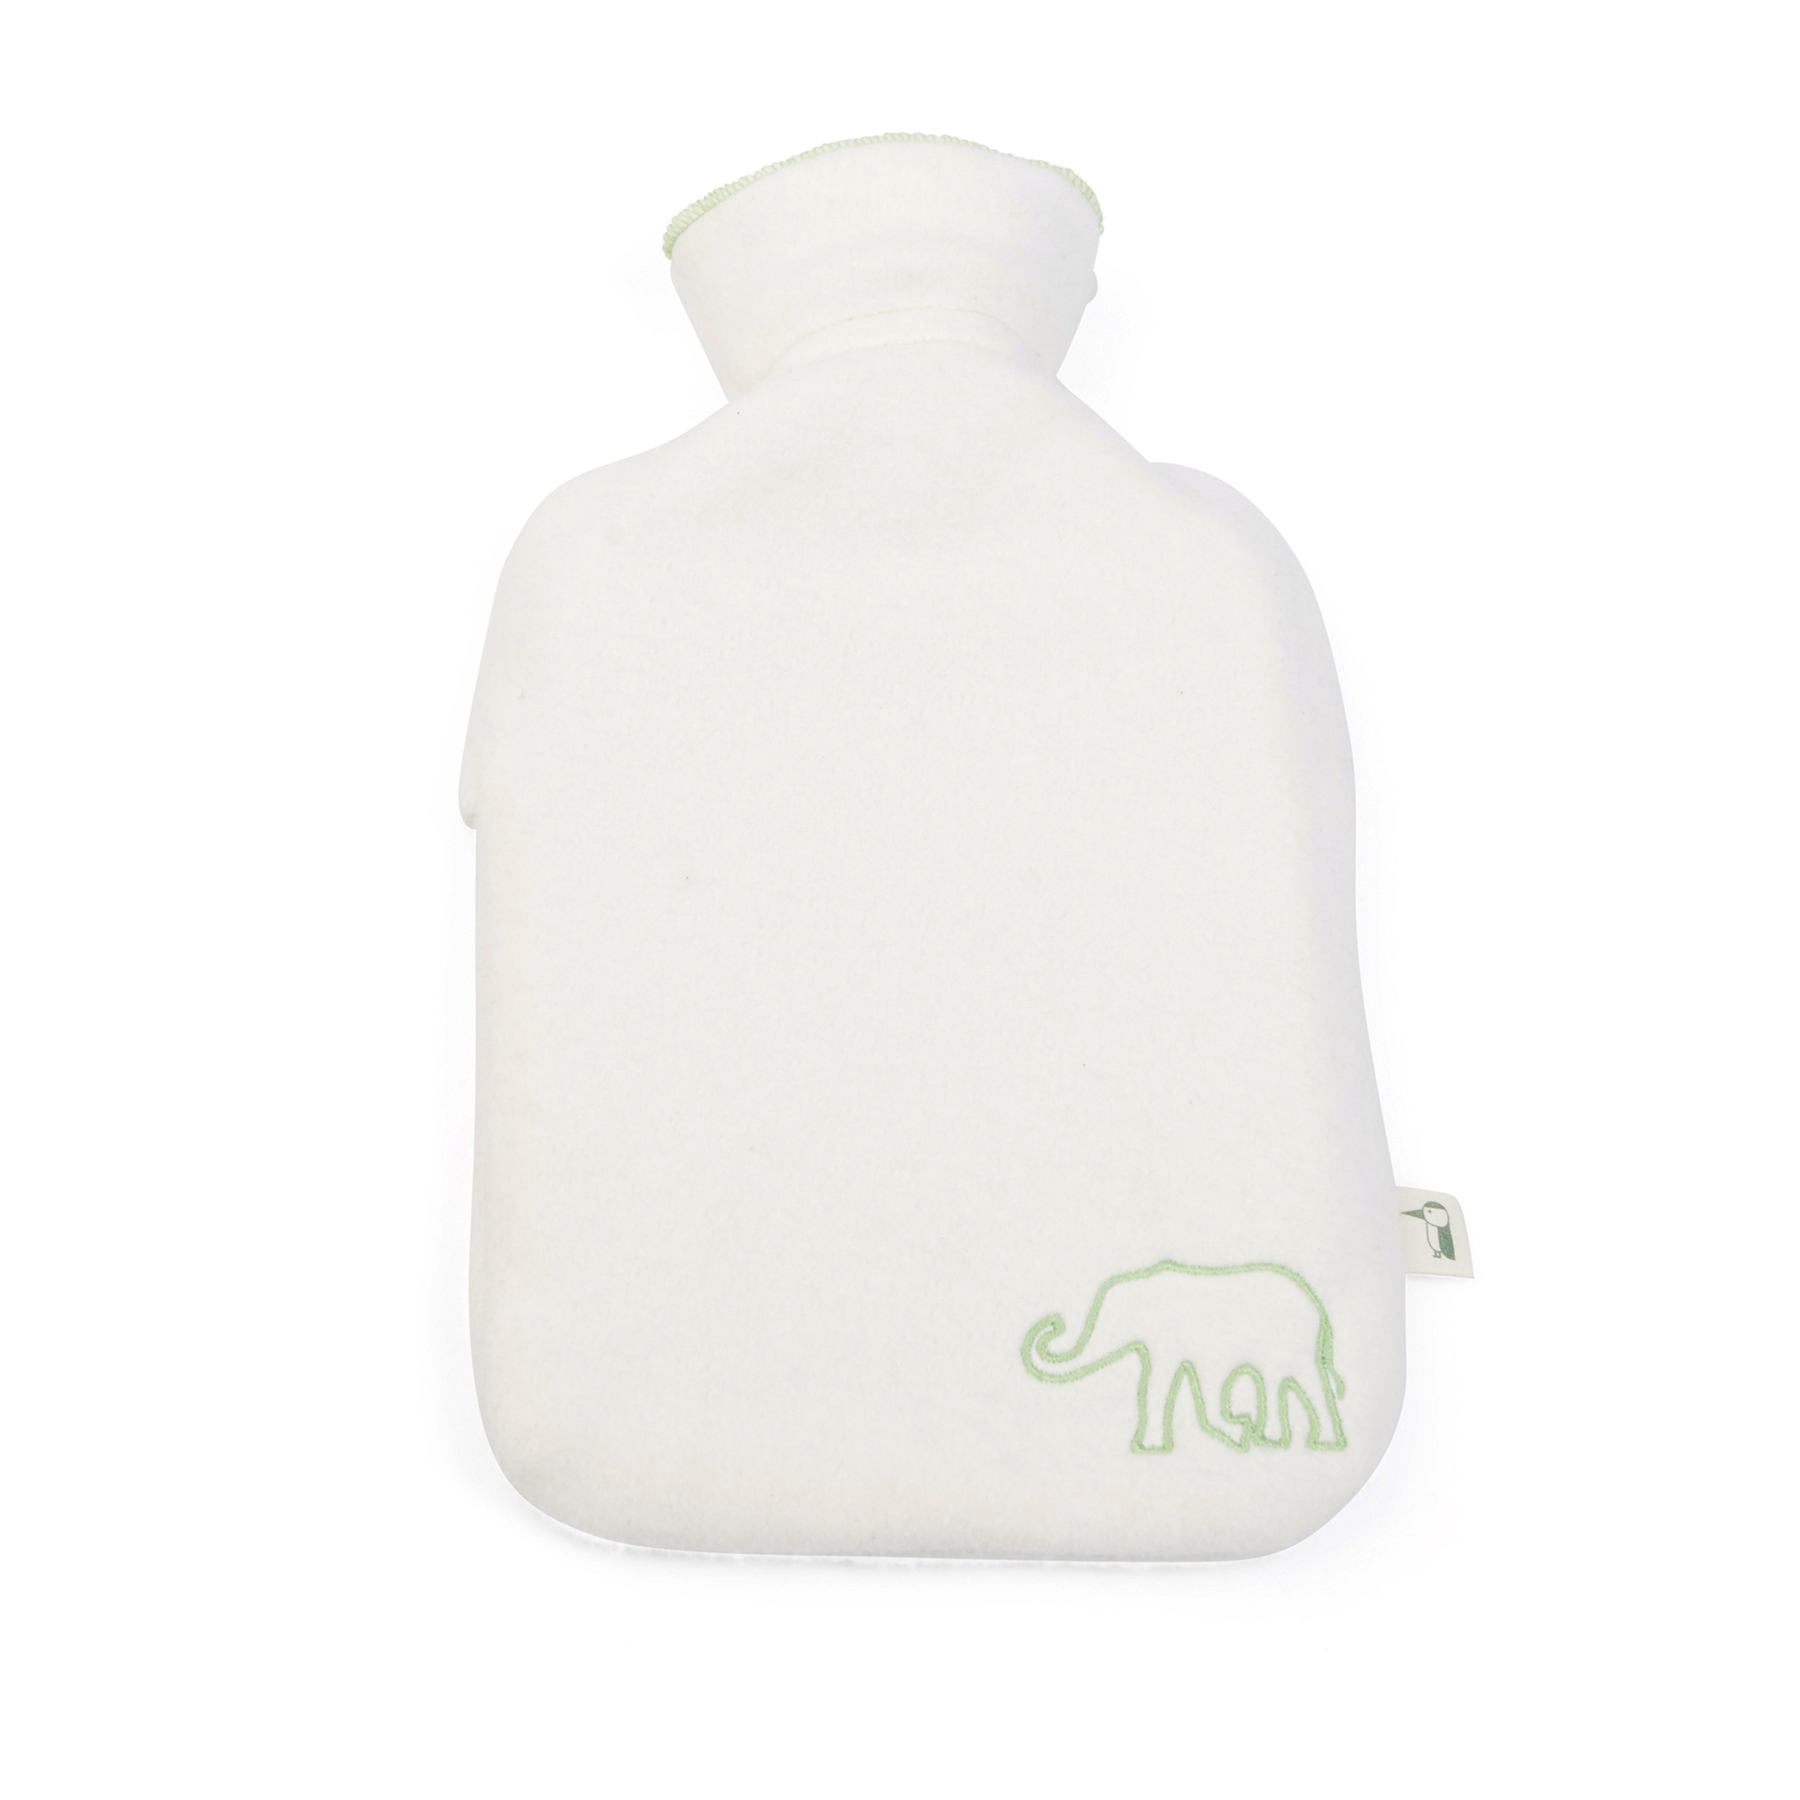 Grünspecht - Bio Wärmflasche für Kinder